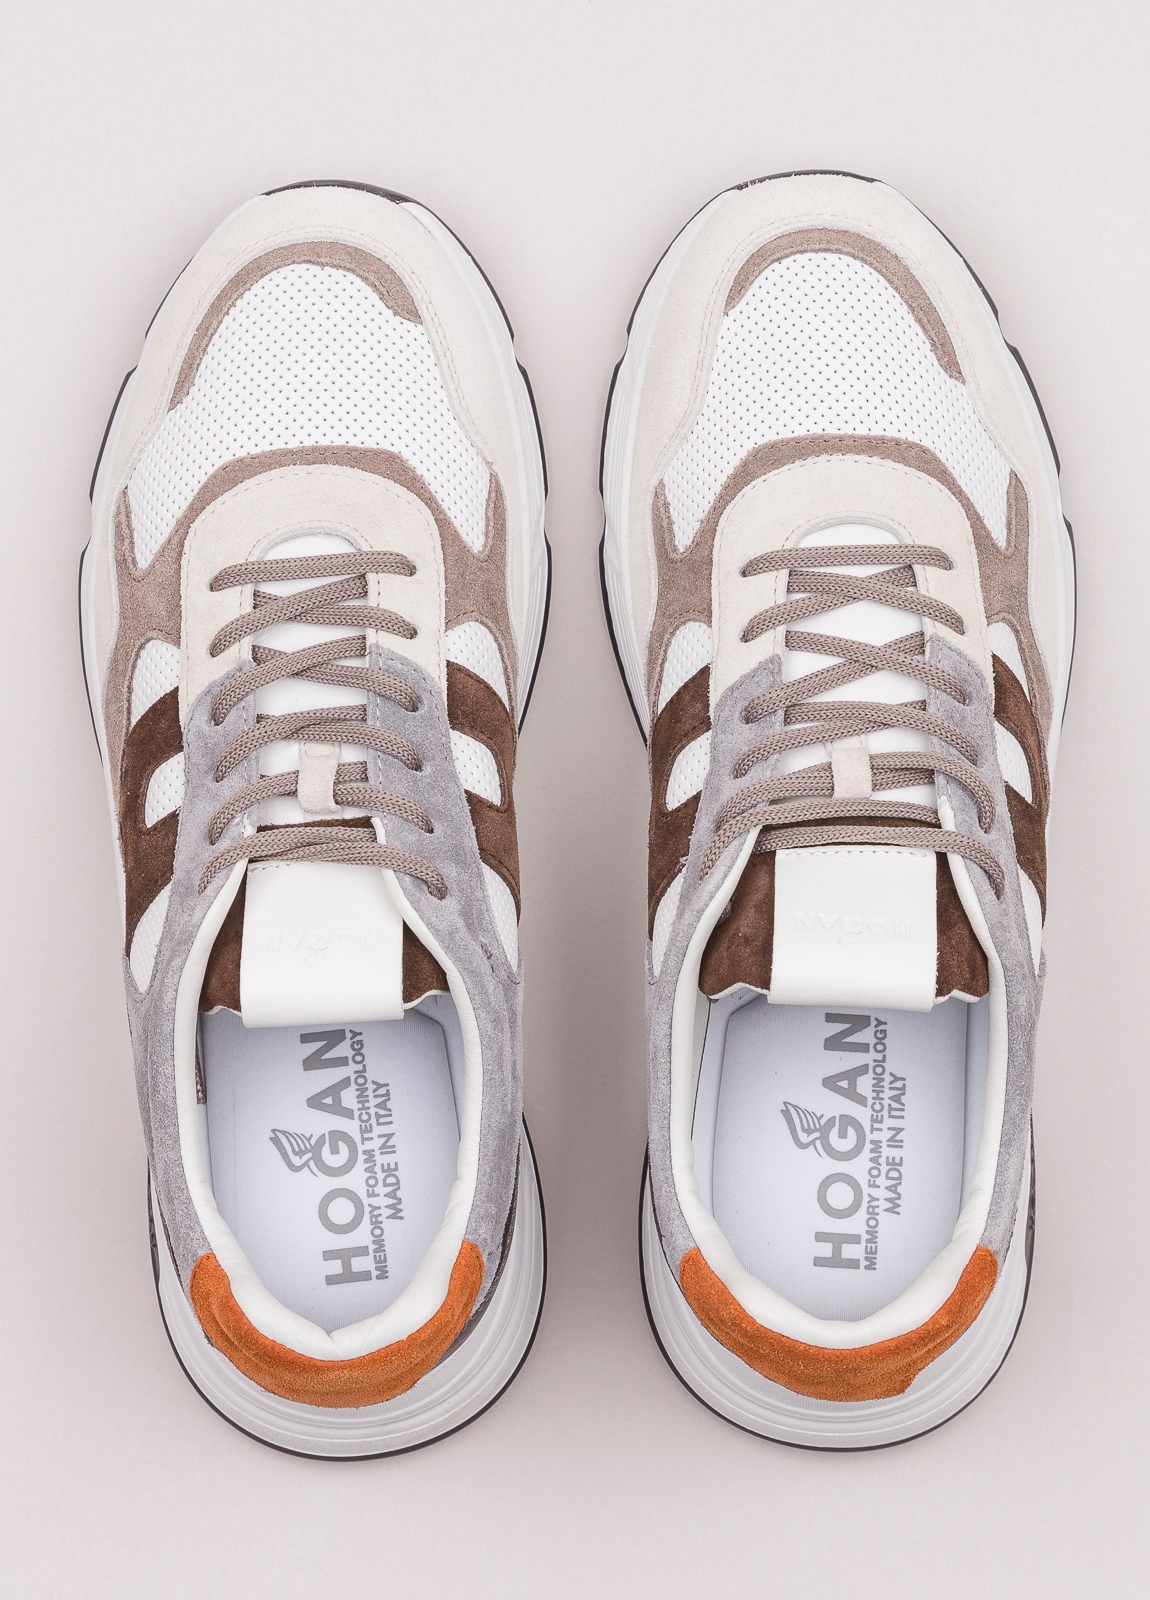 Zapatillas deportivas HOGAN blanco, gris y marrón - Ítem1